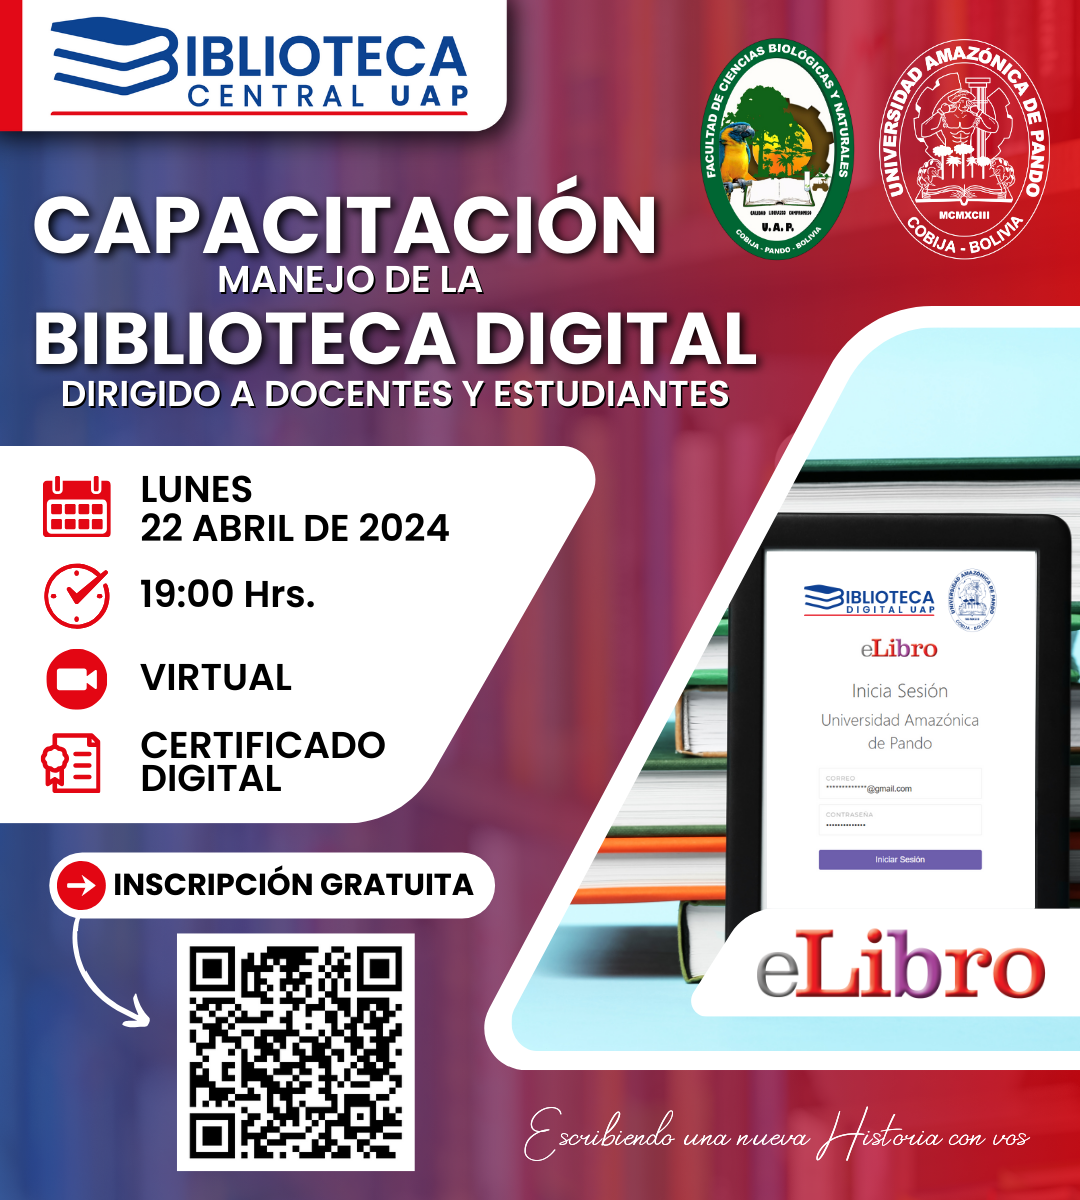 CAPACITACION - MANEJO DE LA BIBLIOTECA DIGITAL (ACBN)